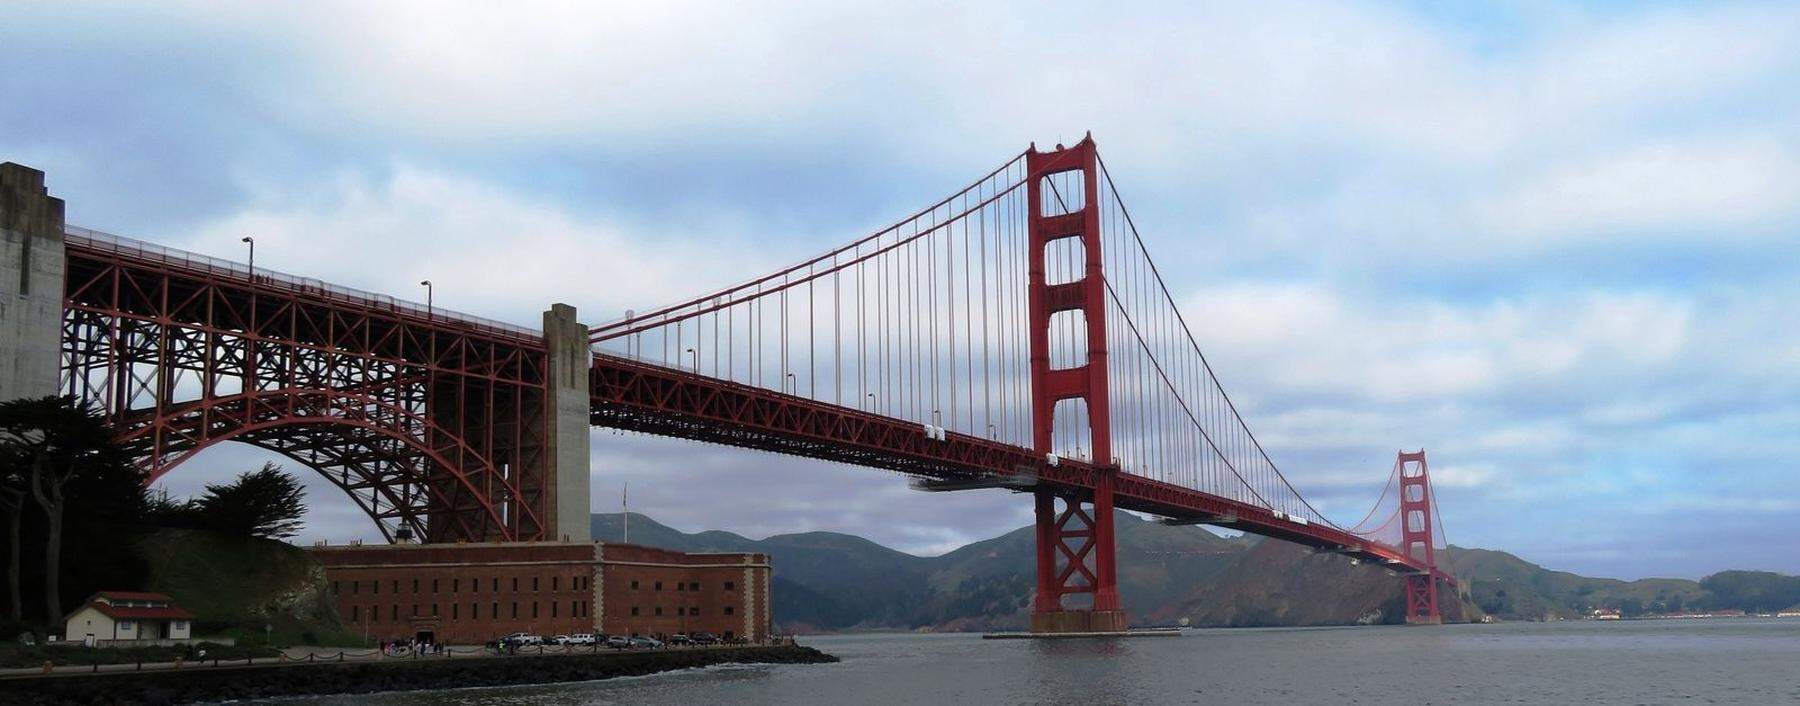 Ein Must: Die vermutlich berühmteste Brücke der Welt: Golden Gate Bridge.